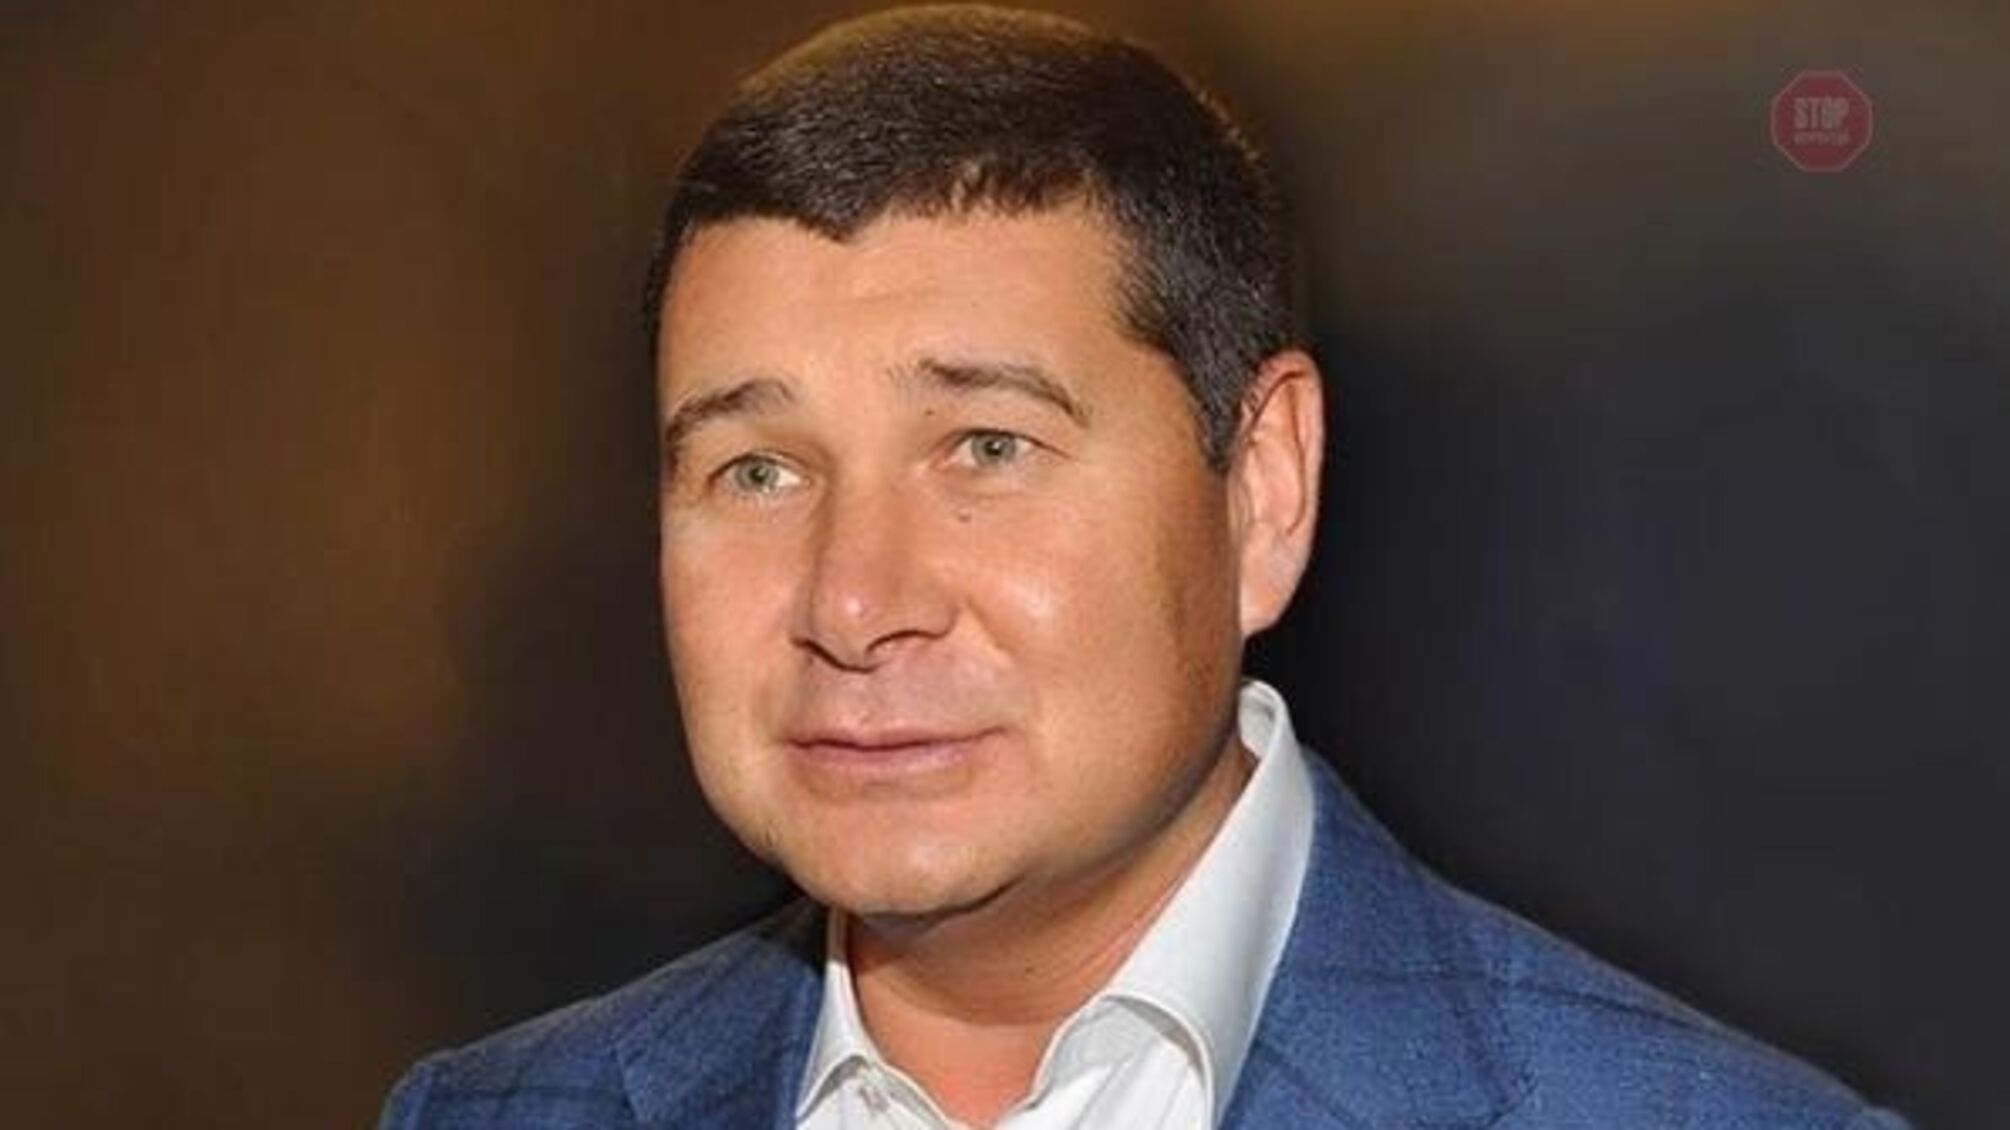 Одіозний втікач Онищенко планує повернутися в країну і завести проросійську силу до Верховної Ради